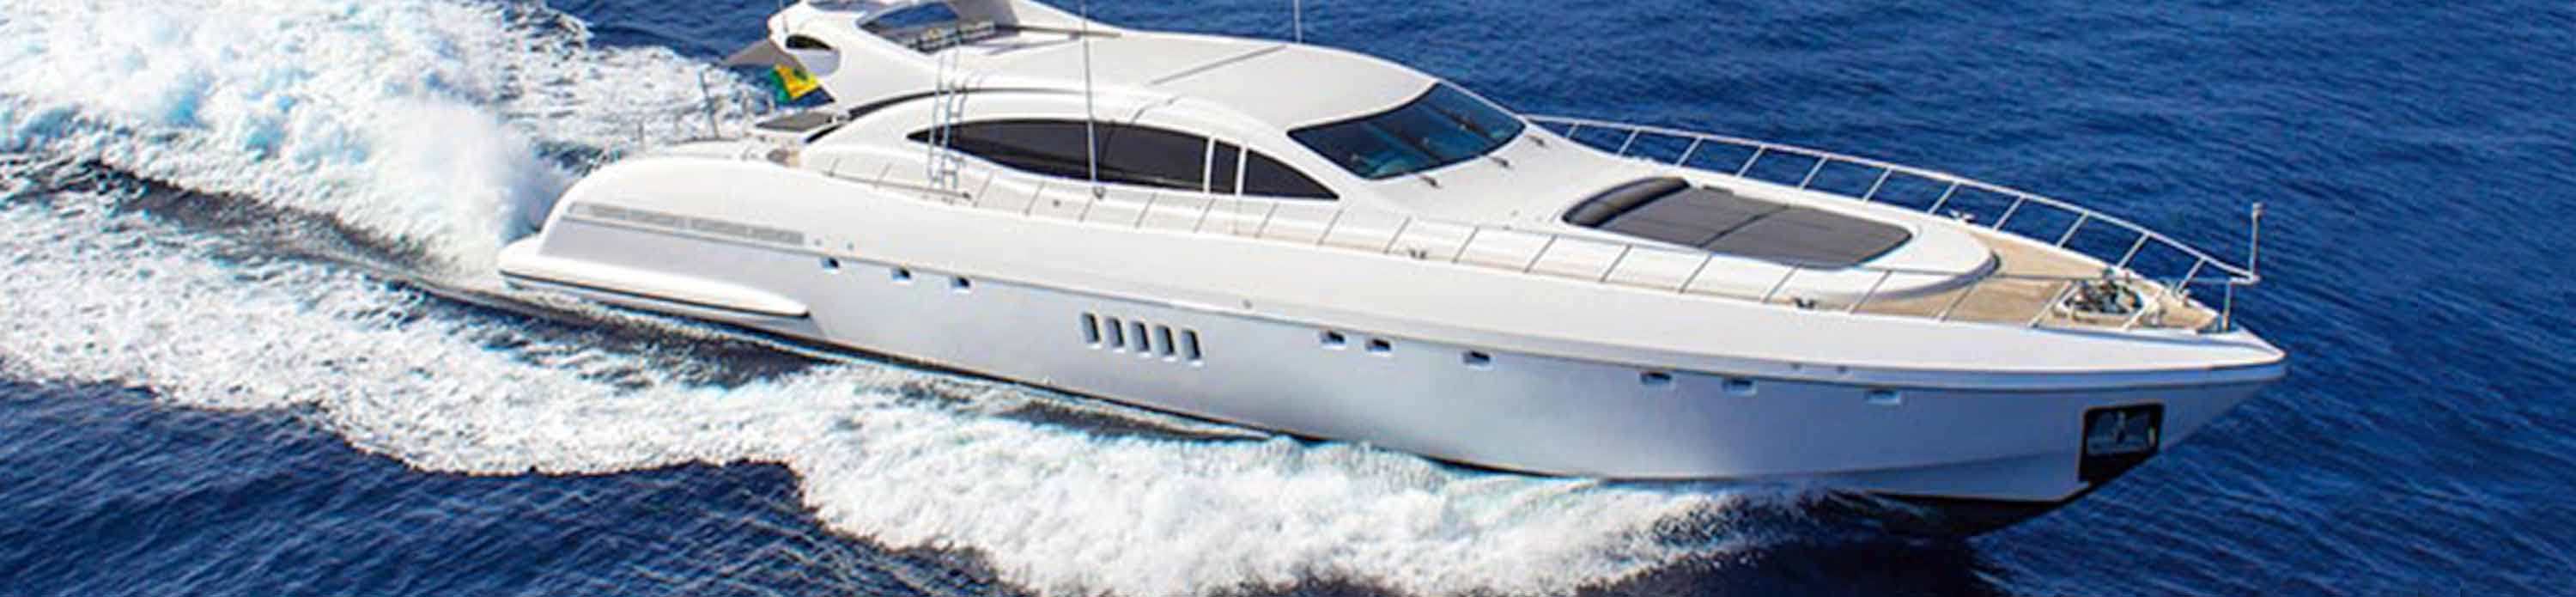 yacht a ibiza